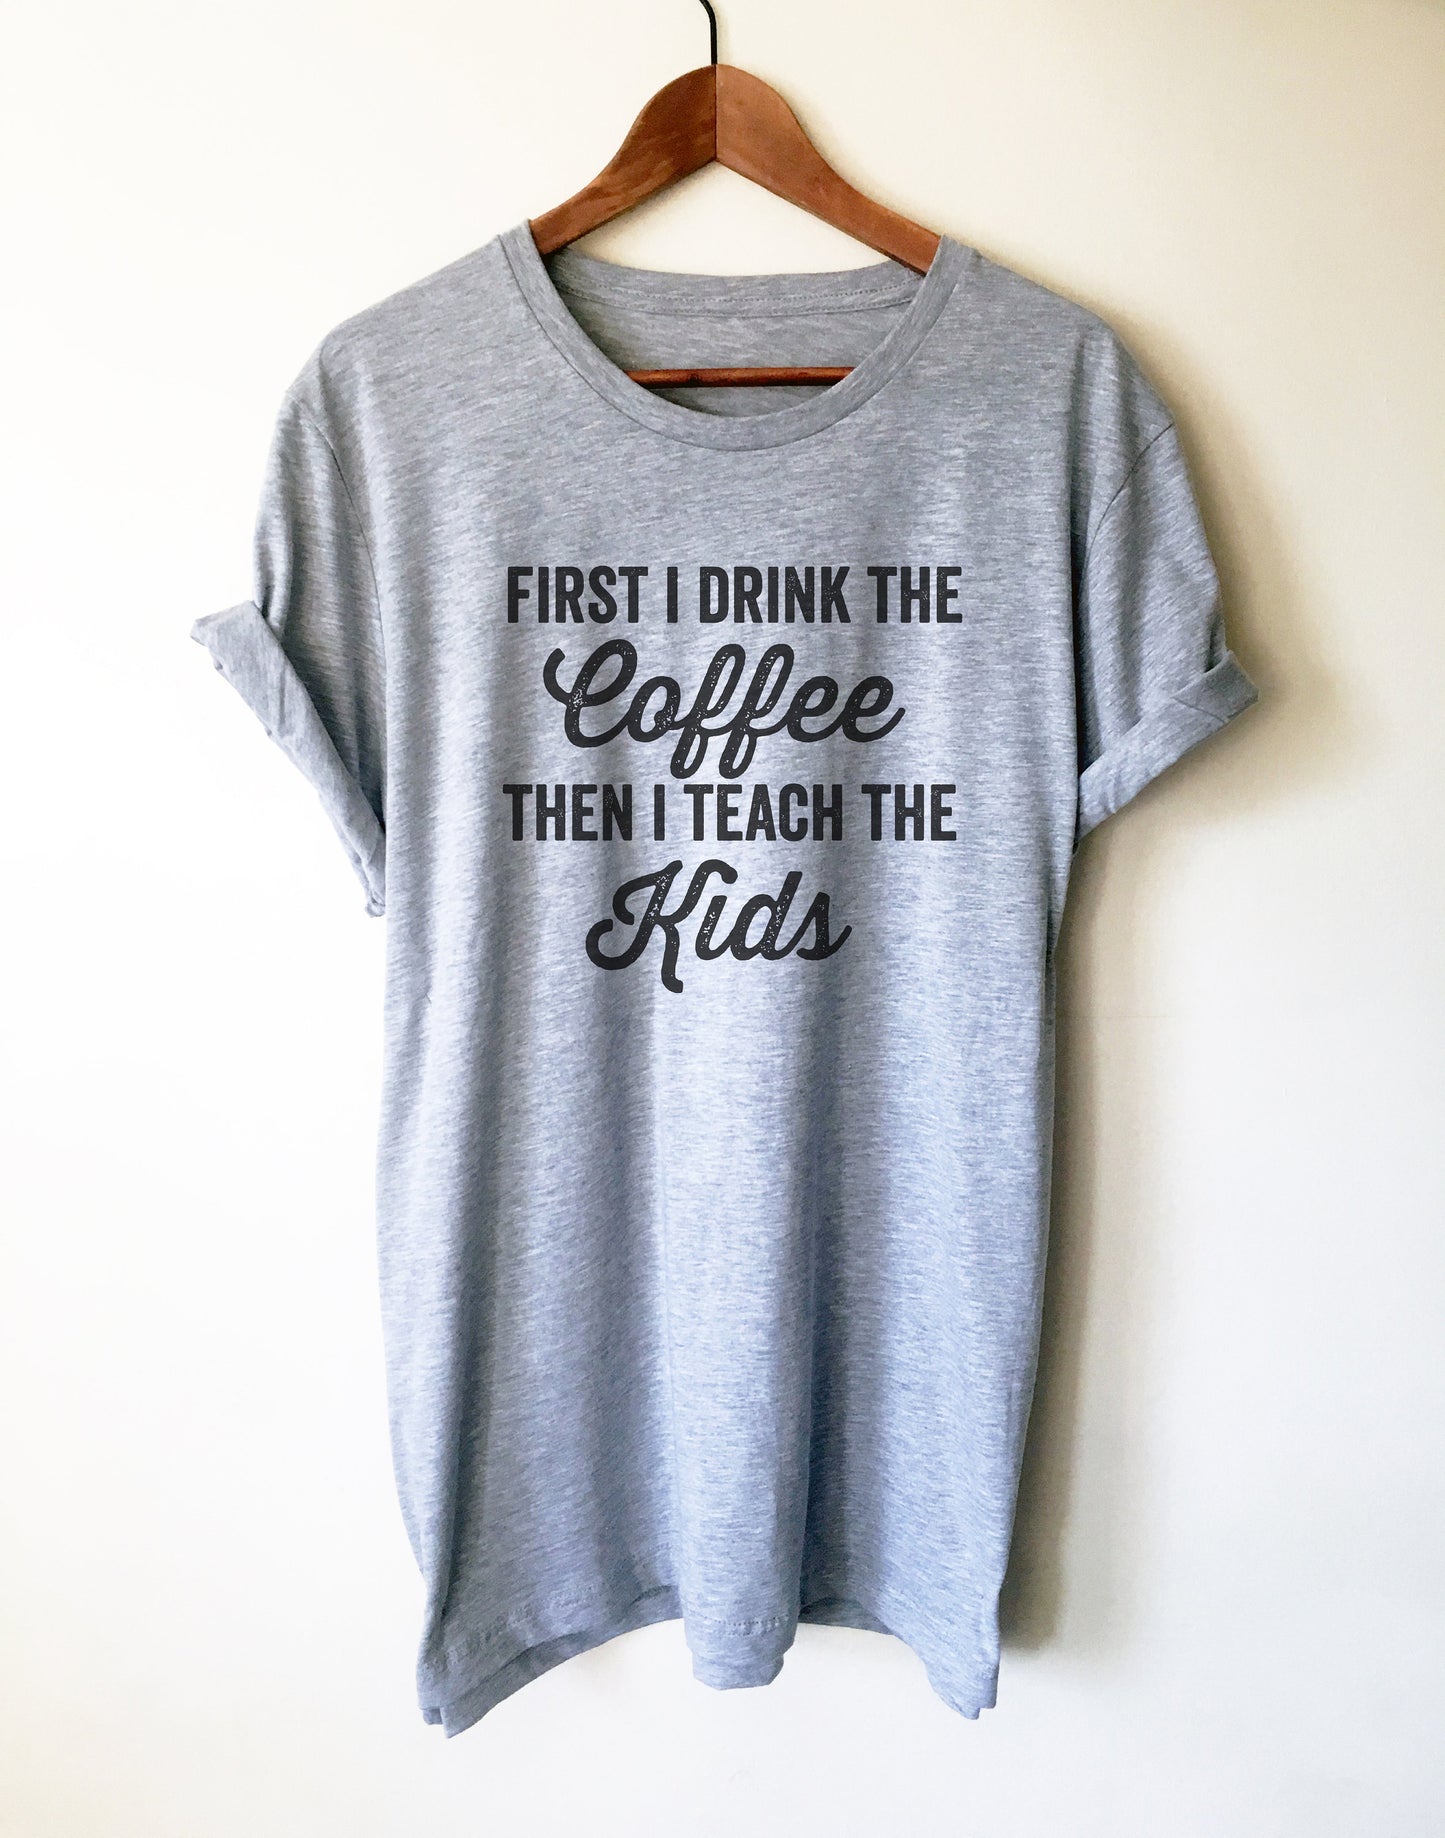 First I Drink The Coffee Then I Teach The Kids Unisex Shirt - Teacher life shirt, Teacher shirt, Teacher appreciation, Funny teacher shirt